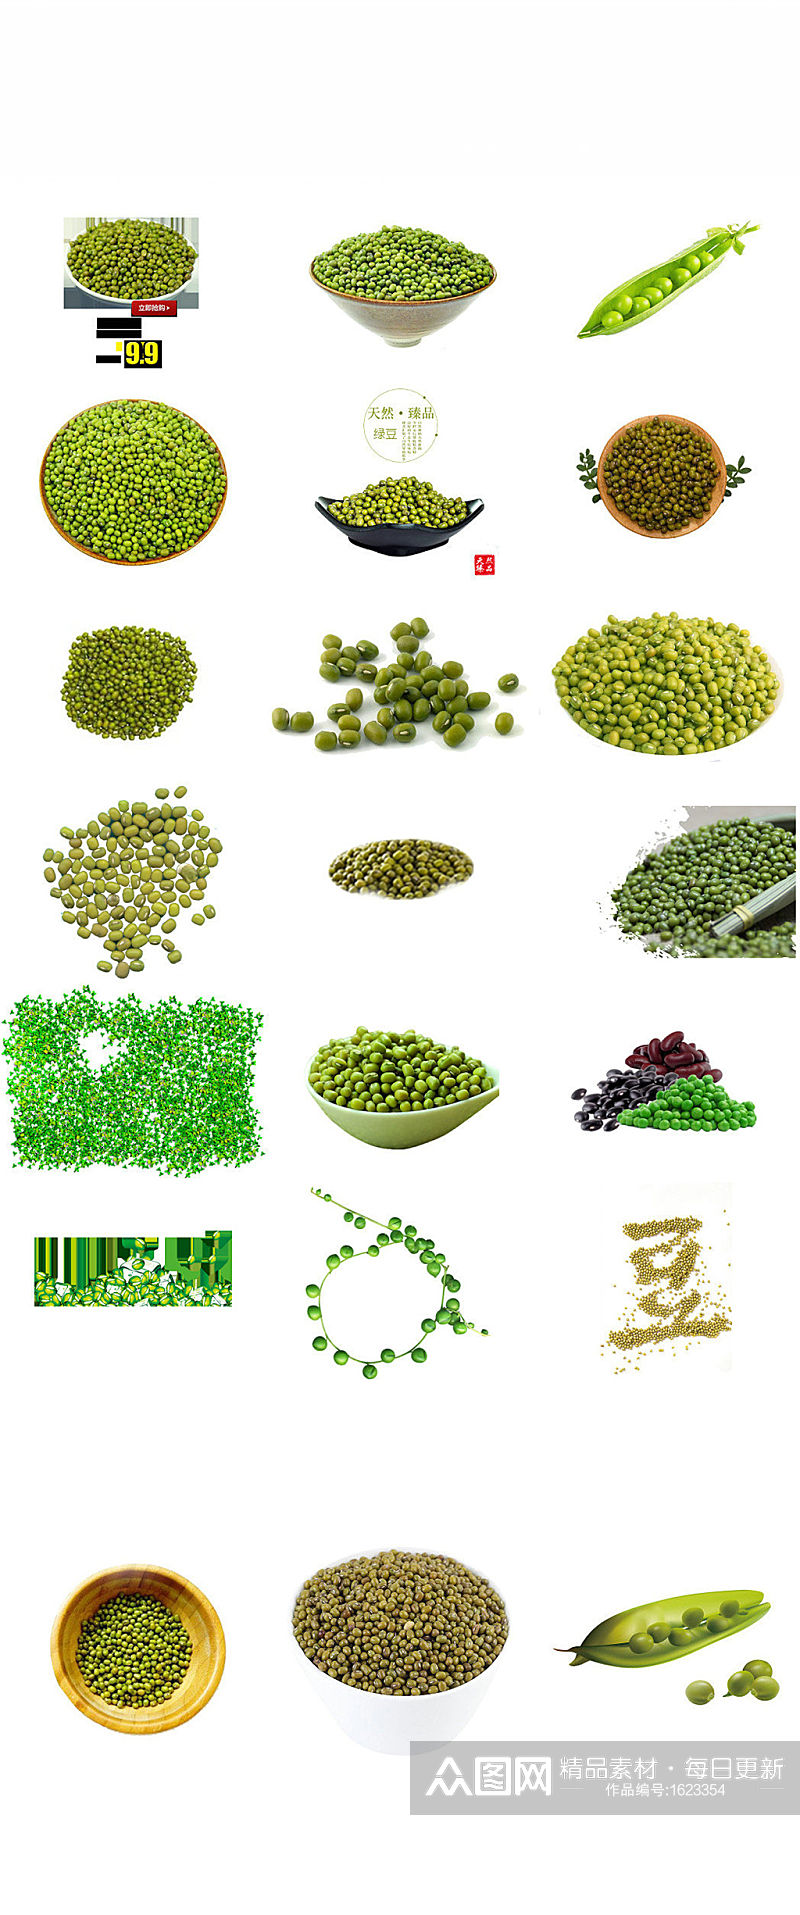 五谷杂粮绿豆海报设计素材素材